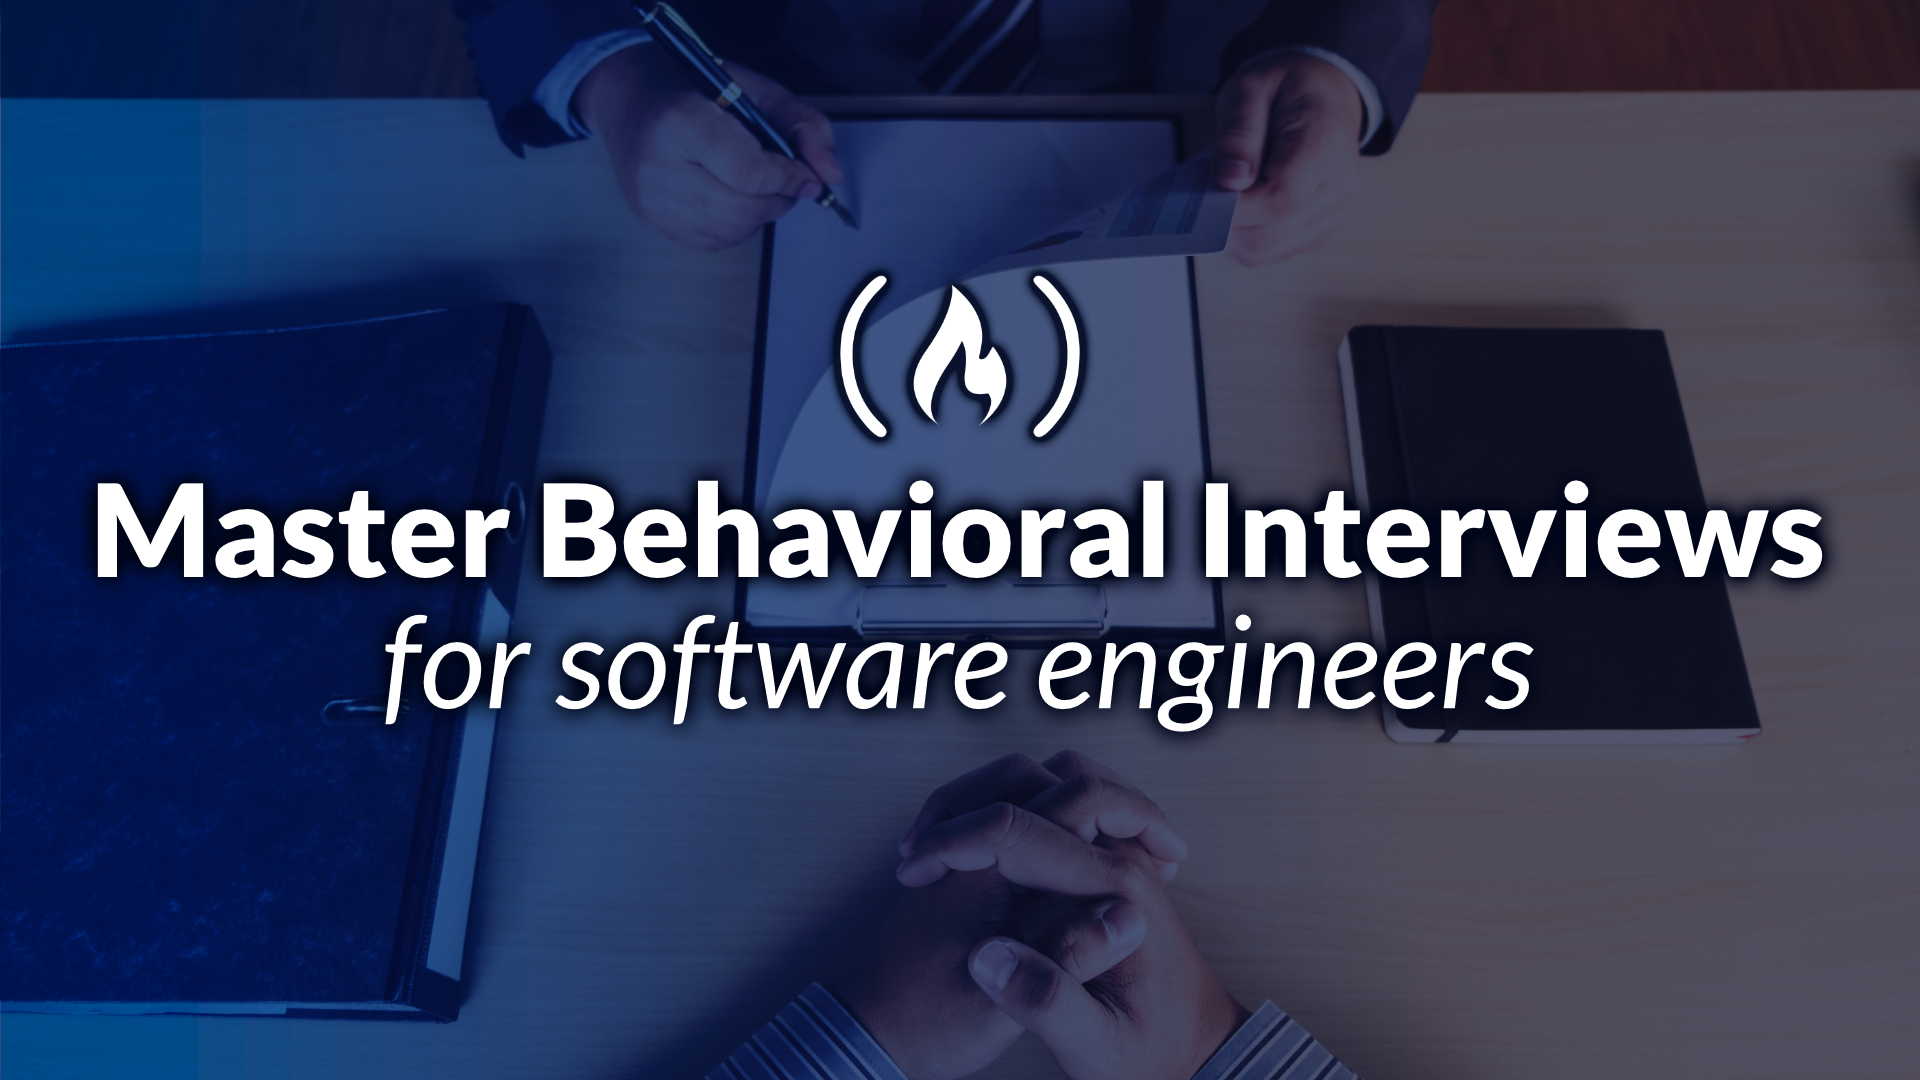 Image for Mastering Behavioral Interviews for Software Developers